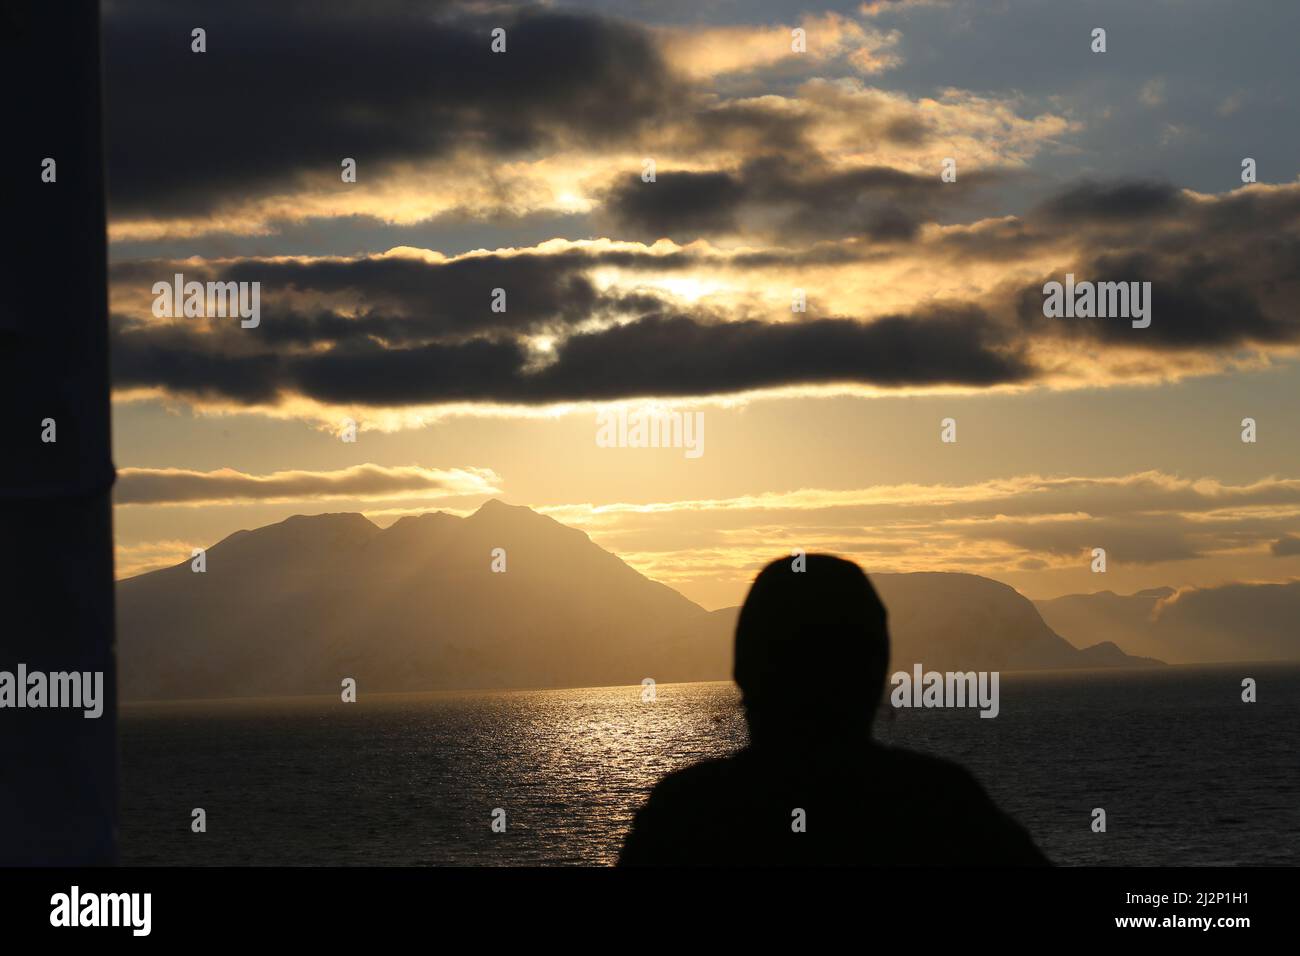 Von Alta nach Sortland - Die Insel Loppa in der Abendsonne Ein Passagier betrachtet die friedliche Situación Foto de stock